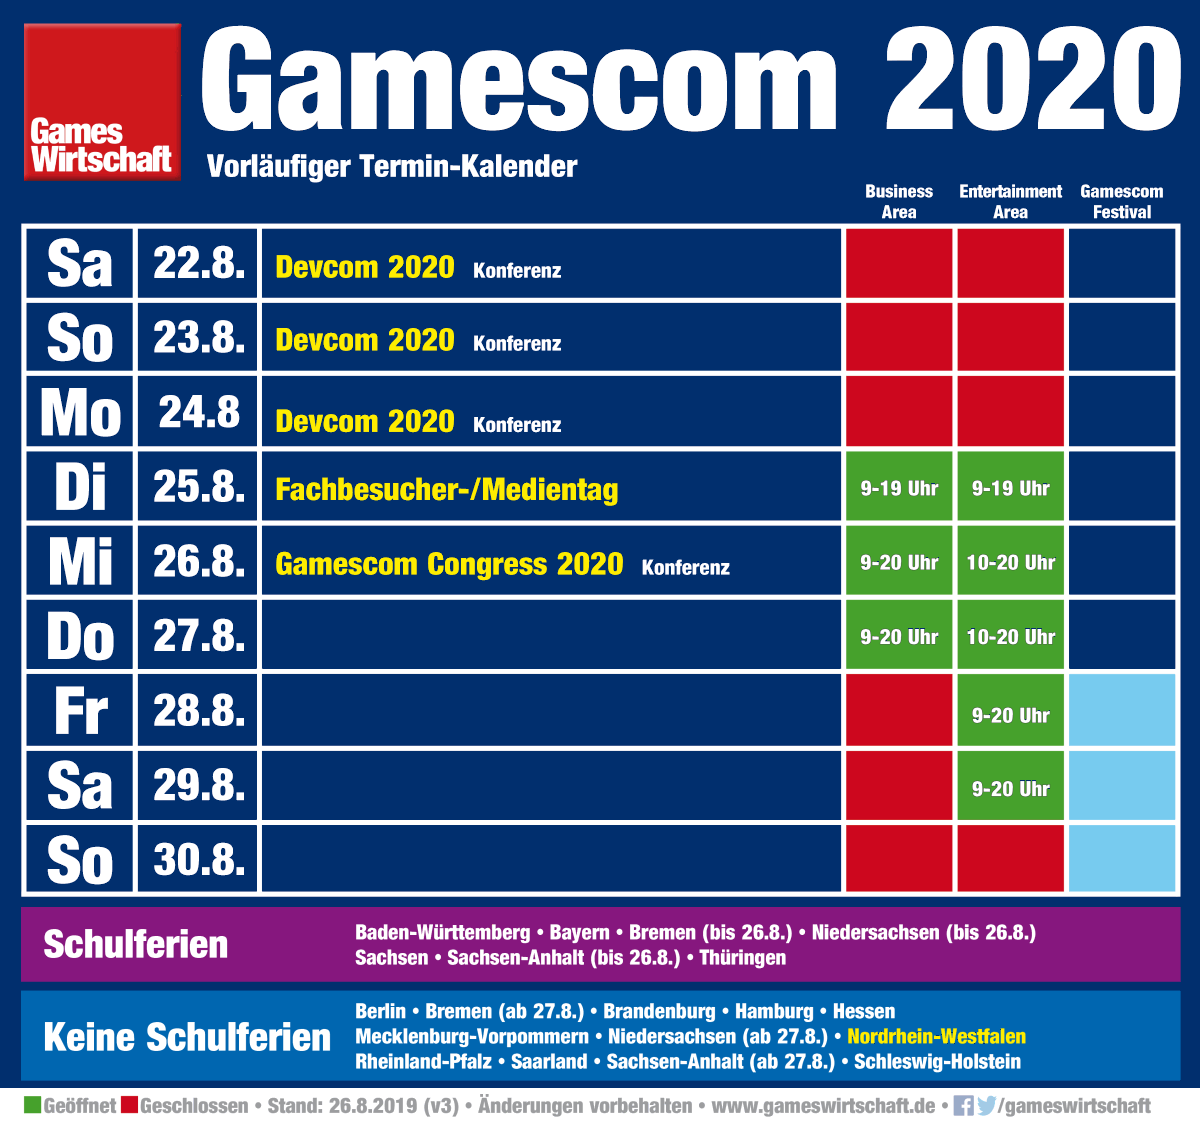 Gamescom 2020 Termin: Die Messe startet am 25. August 2020 und endet am 29. August 2020 (Änderungen vorbehalten, Stand: 26.8.19)